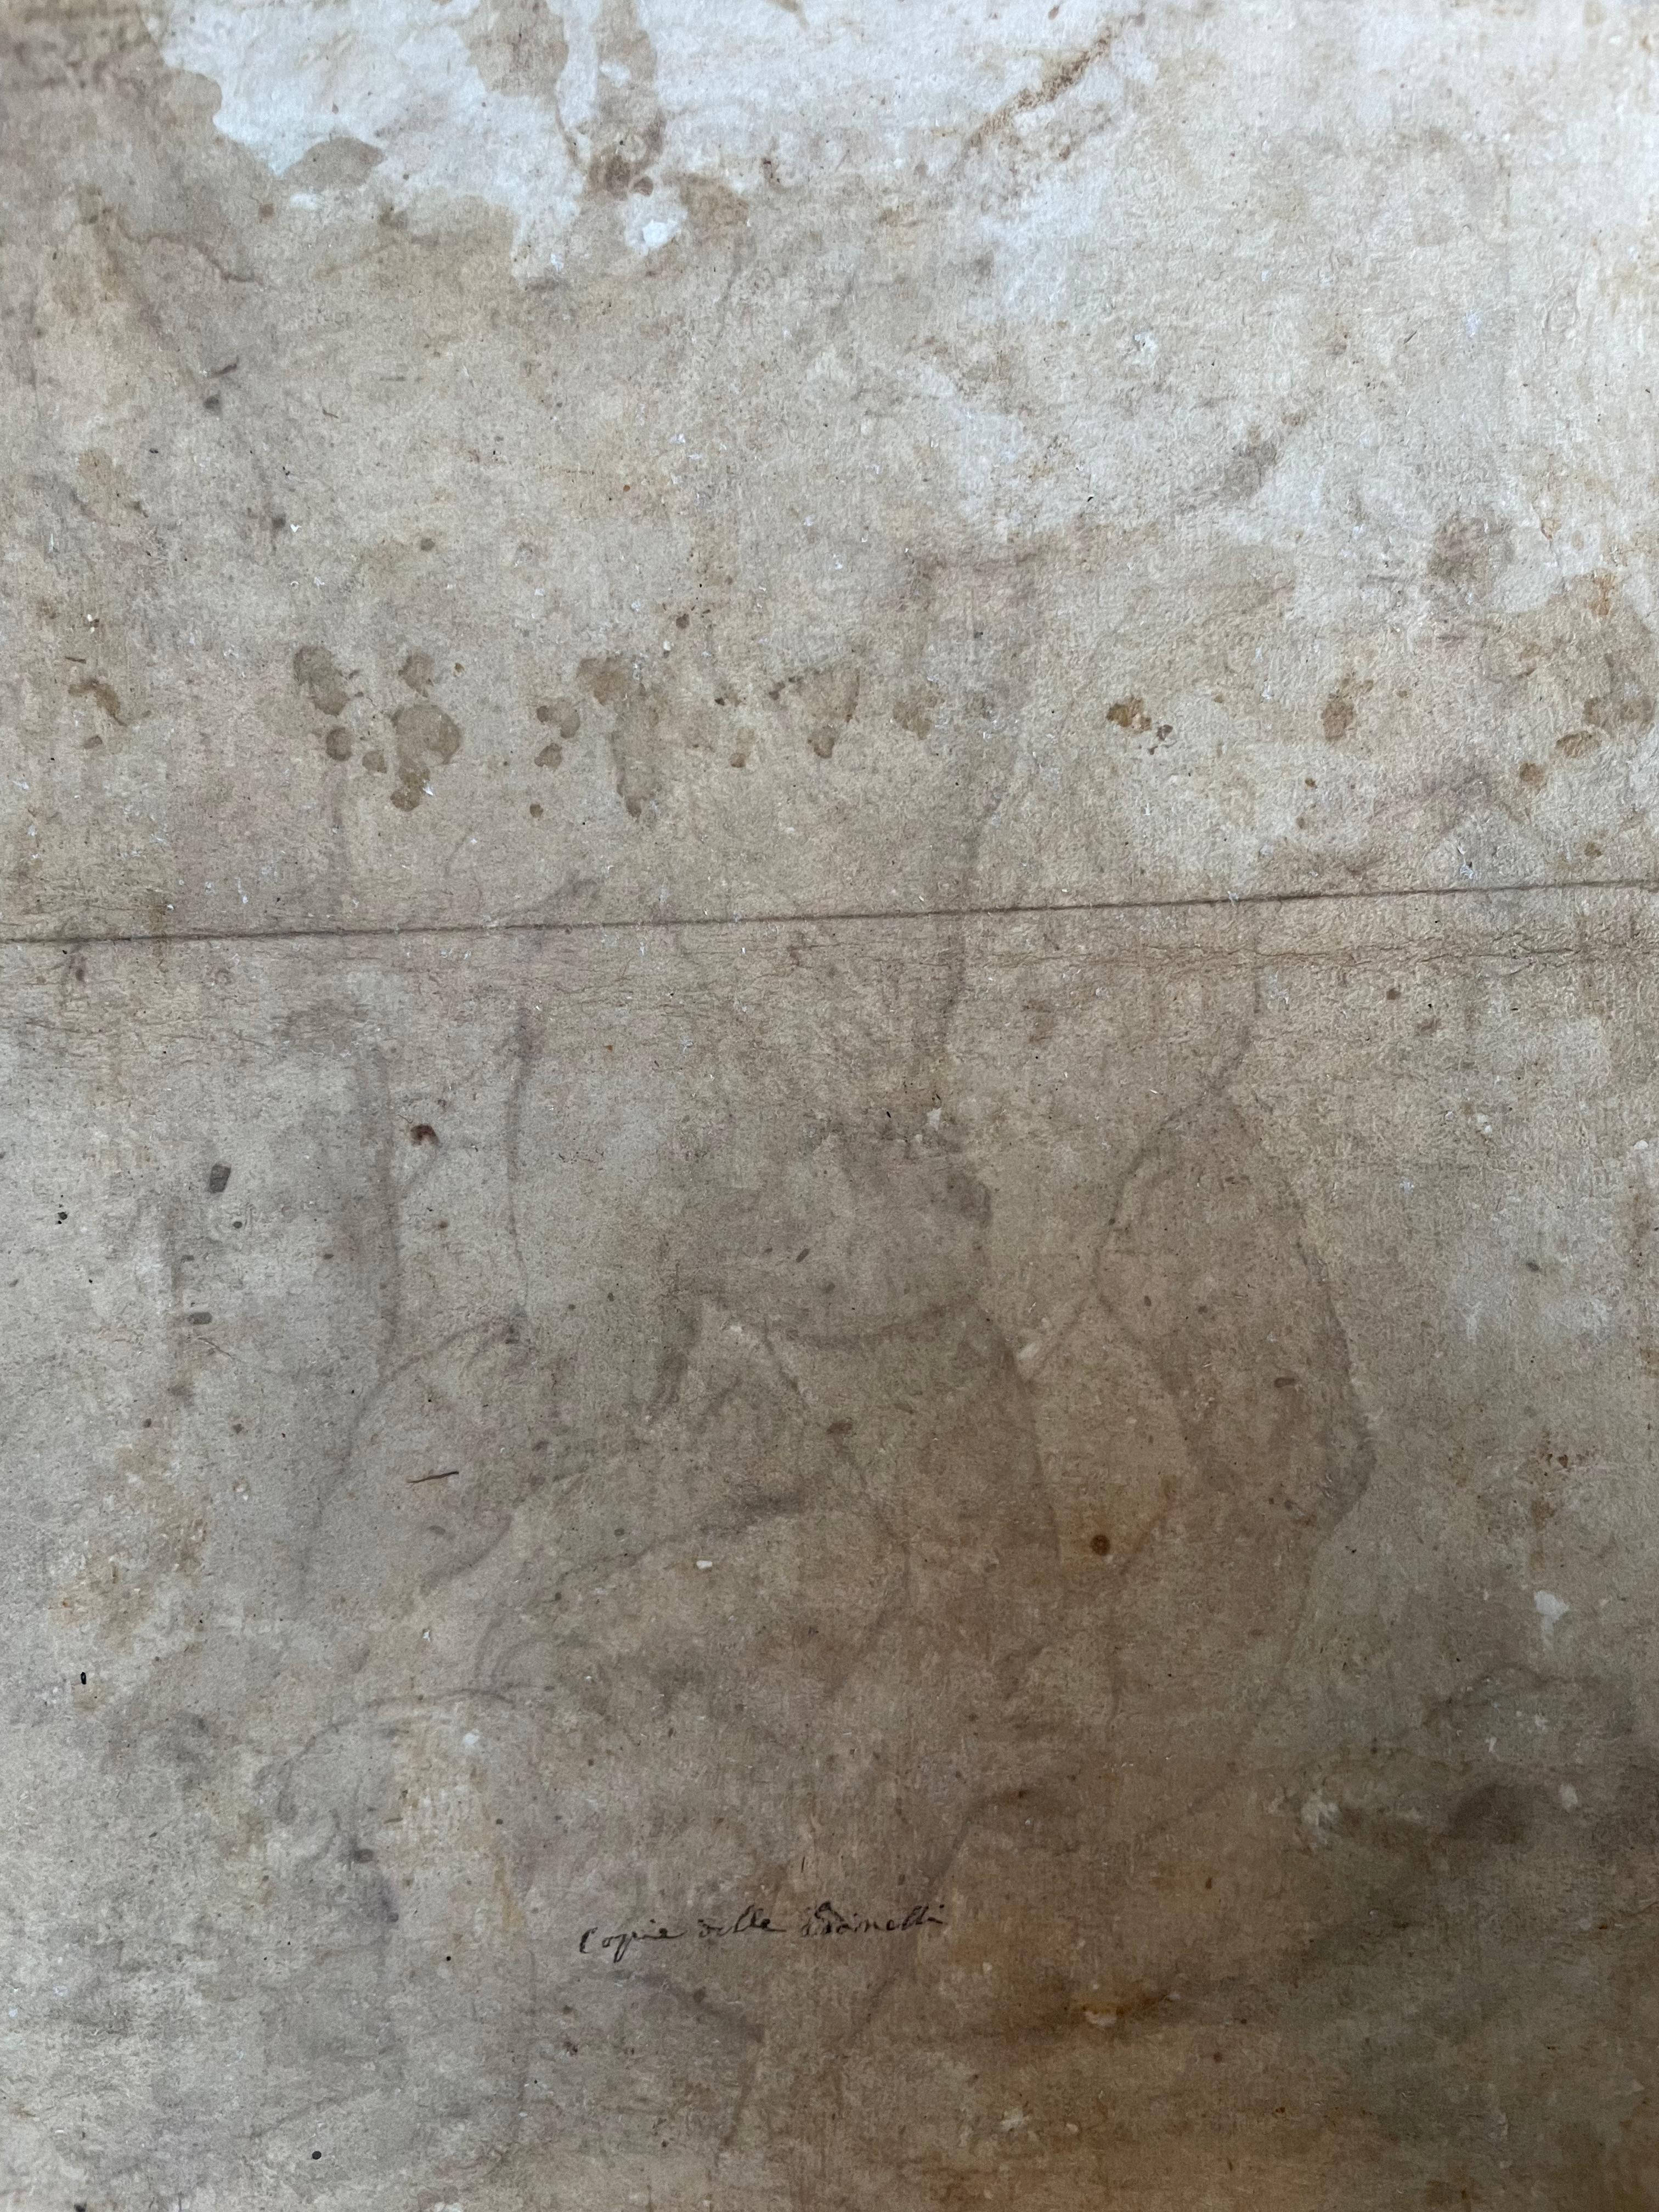 Jacopo Zanguidi BERTOJA (1544-1574)
Fünffigurenkampf, Flachrelief aus der Schule von Athen nach Raphael

Tinte auf Papier
43×34cm

Interessante Sache
Laut Professor David Ekserdjian ist die Inschrift auf unserem Blatt

